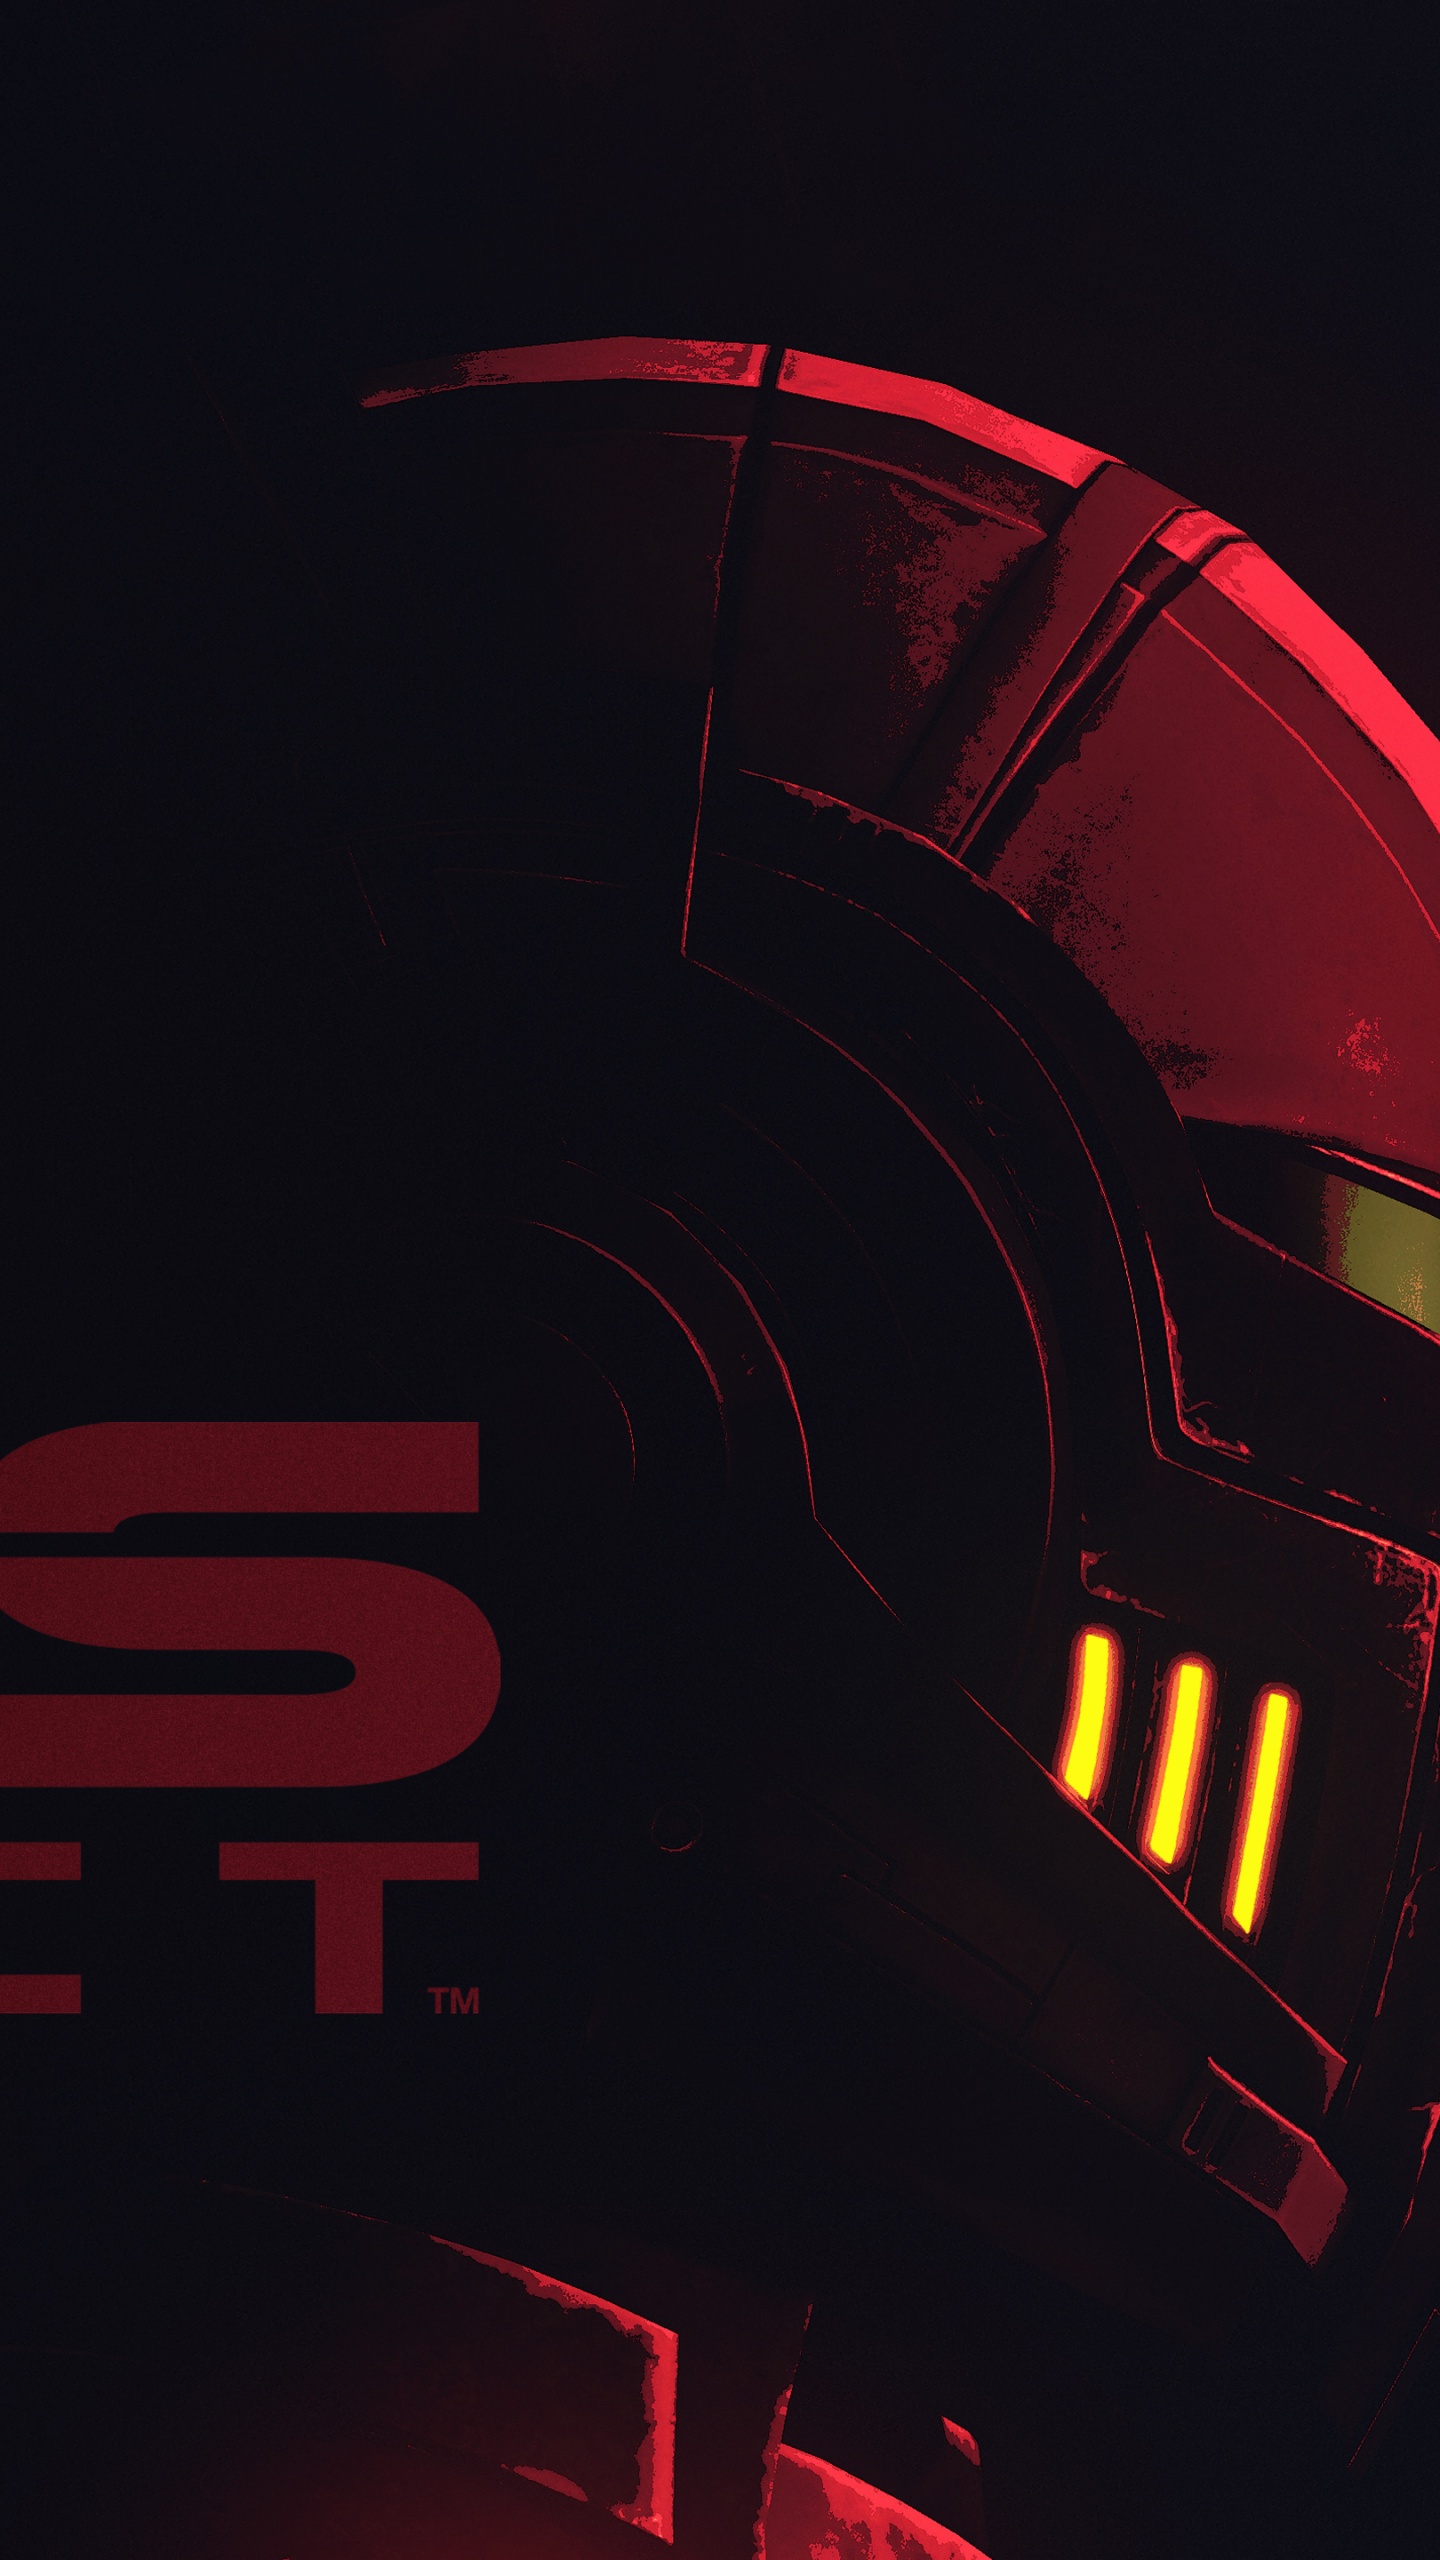 Mass Effect Wallpaper 4K, Dark background, 5K, Black/Dark, #8150